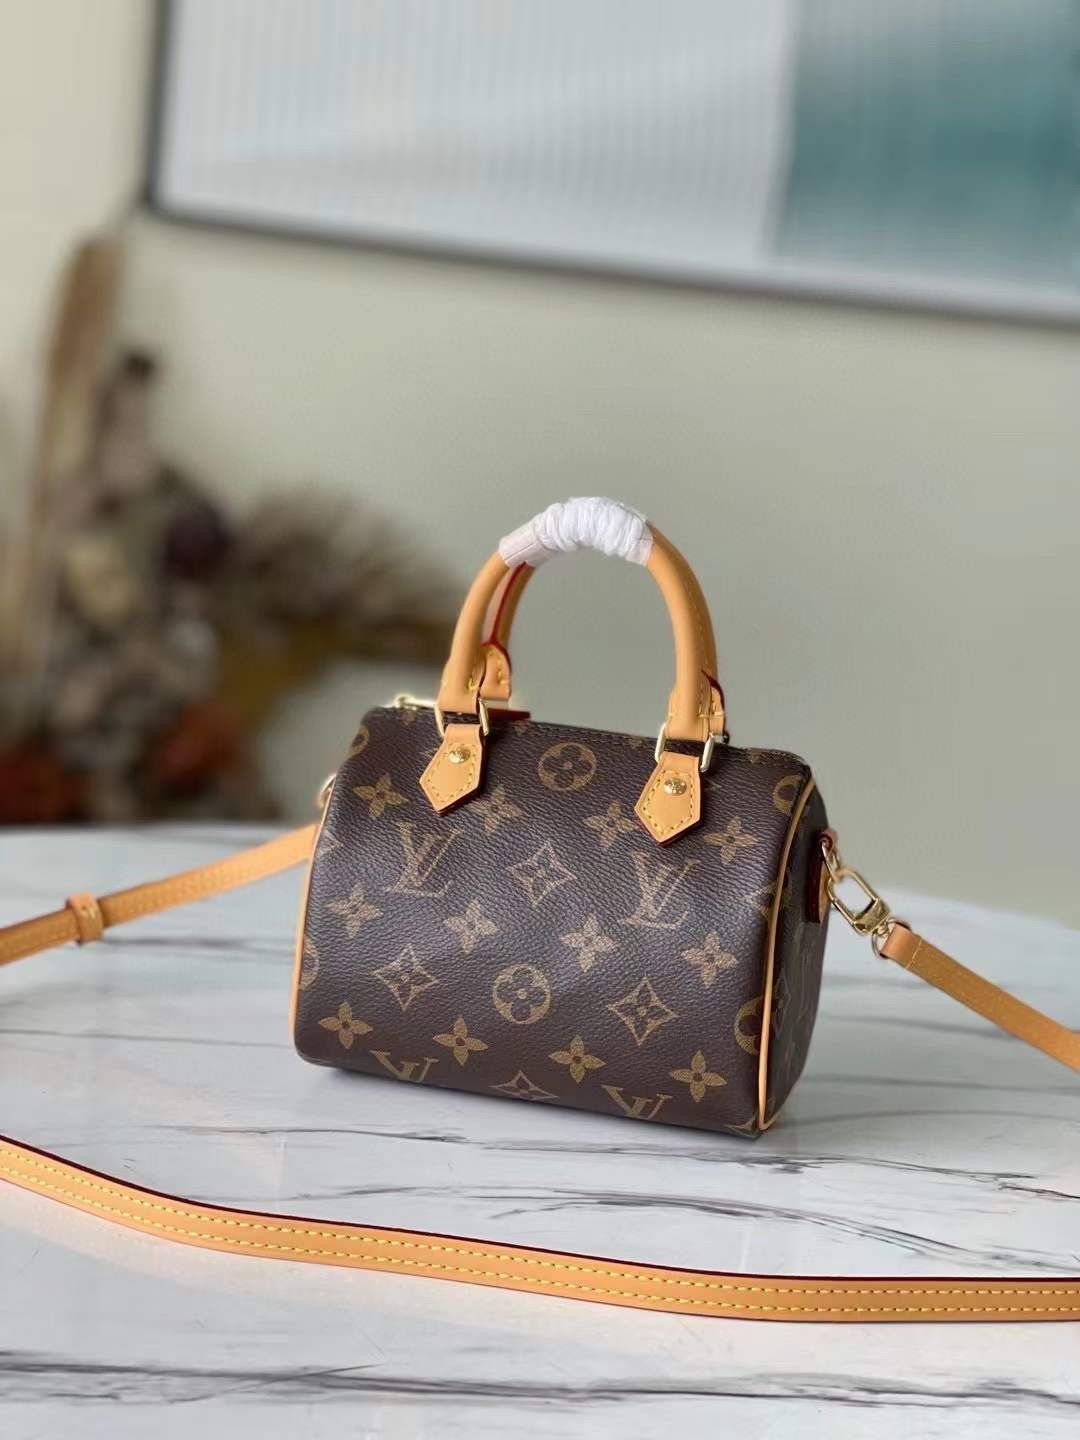 Louis Vuitton M81085 NANO SPEEDY Найкраща якість сумки-копії (оновлено 2022 року)-Best Quality Fake Louis Vuitton Bag Online Store, Replica designer bag ru